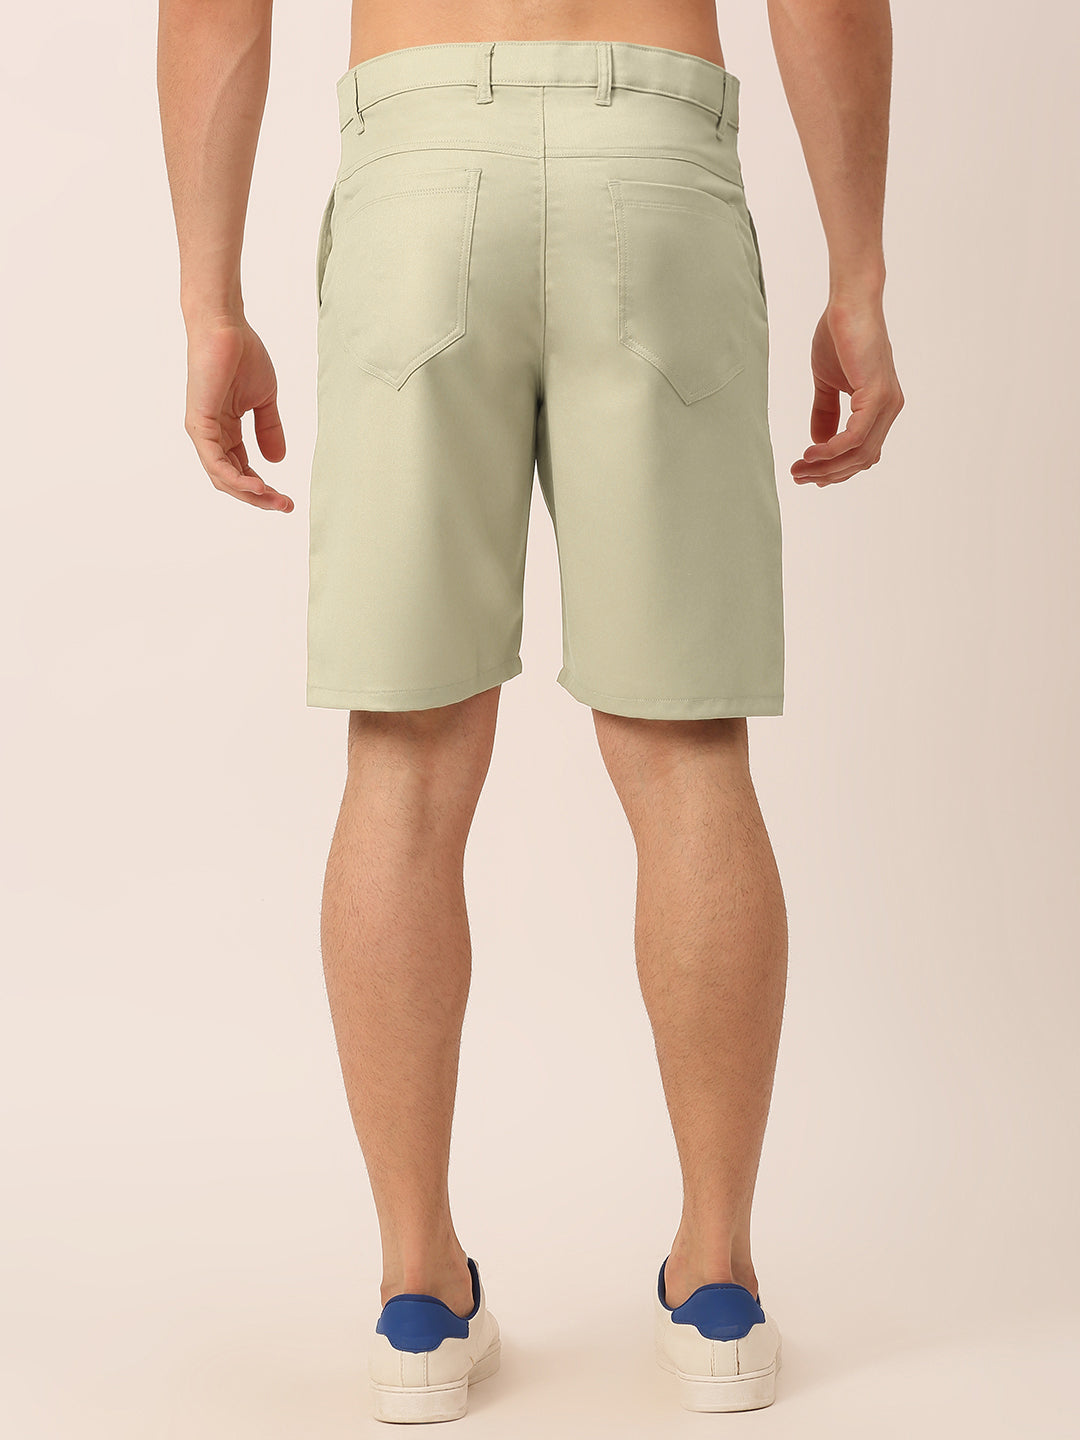 Men's Casual Cotton Solid Shorts ( SGP 153 Cream ) - Jainish